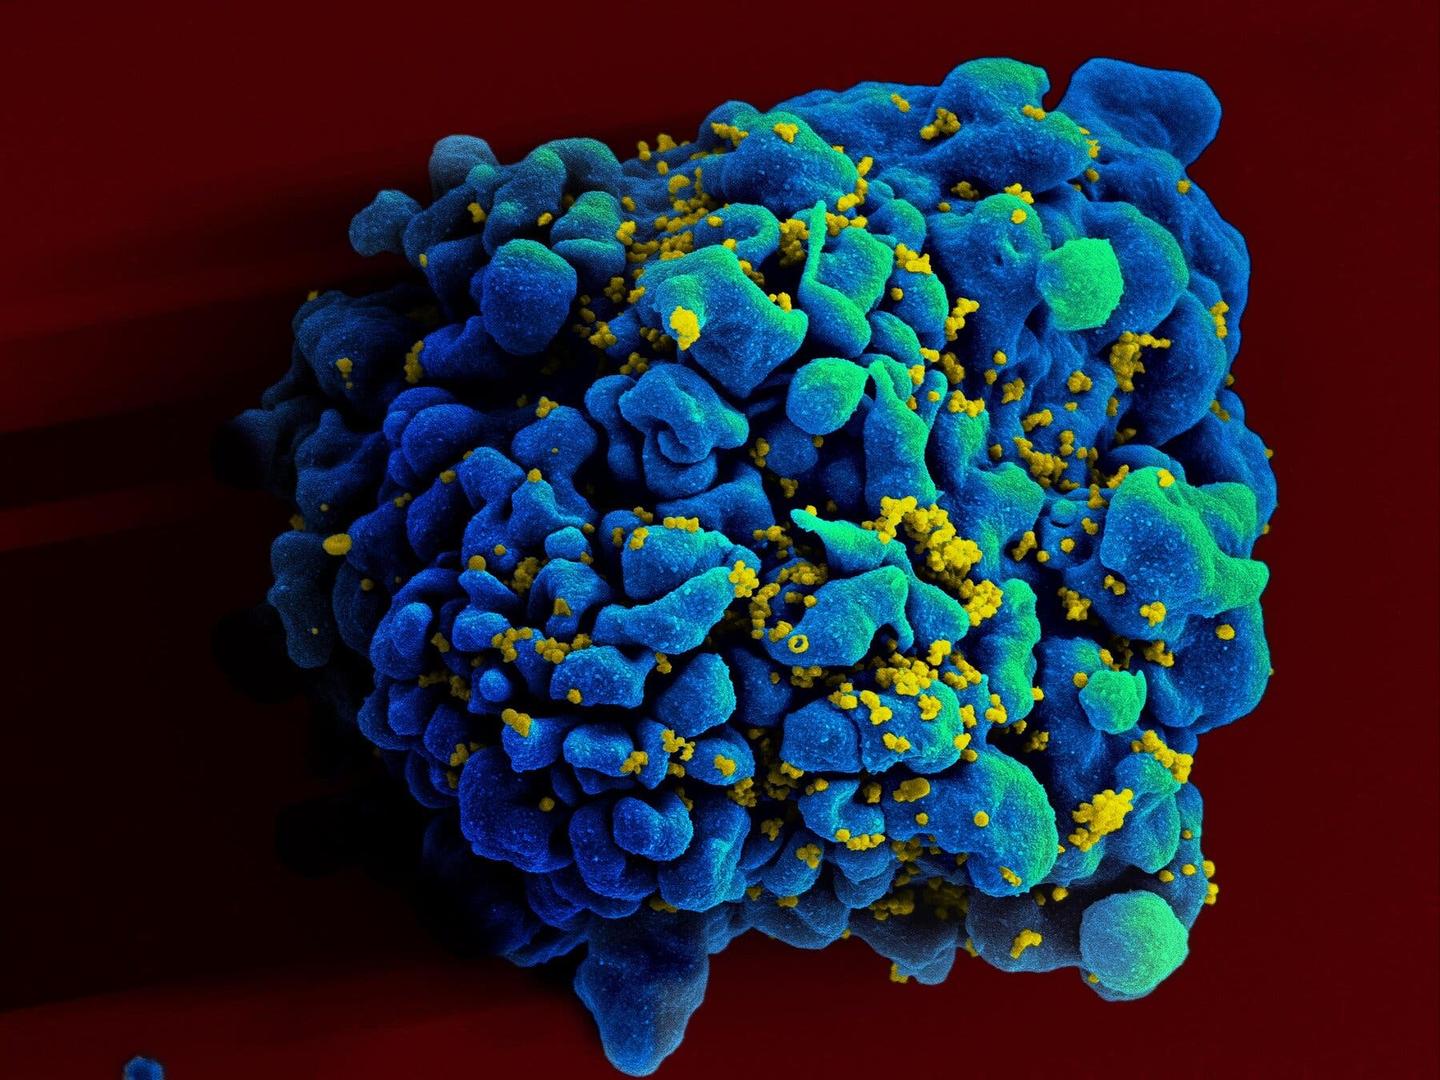 艾滋病毒感染的人体T细胞着色扫描 图据《纽约时报》